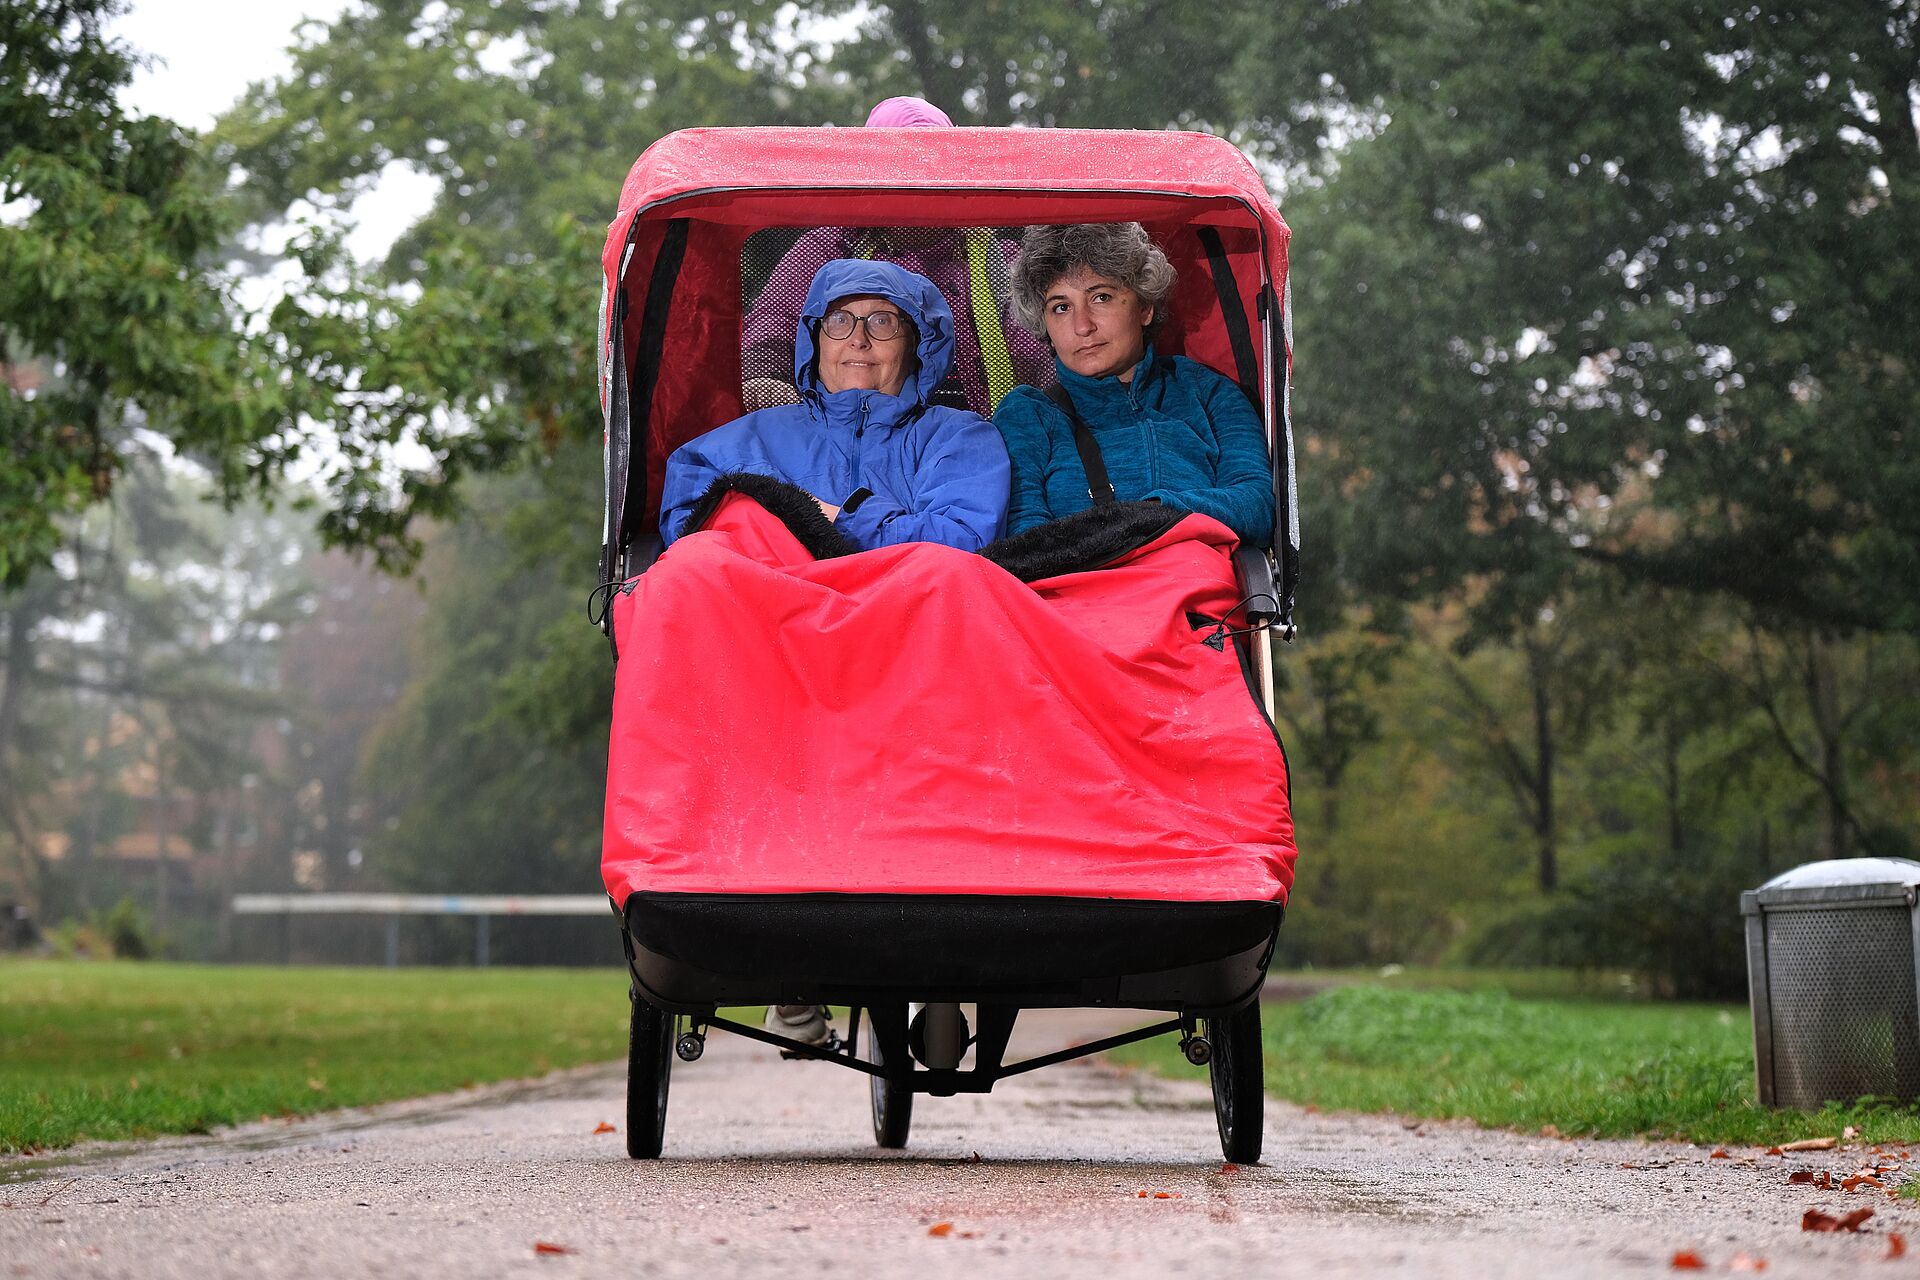 Die Rad-Rikscha "Flotte Lotte" mit zwei Mitfahrerinnen